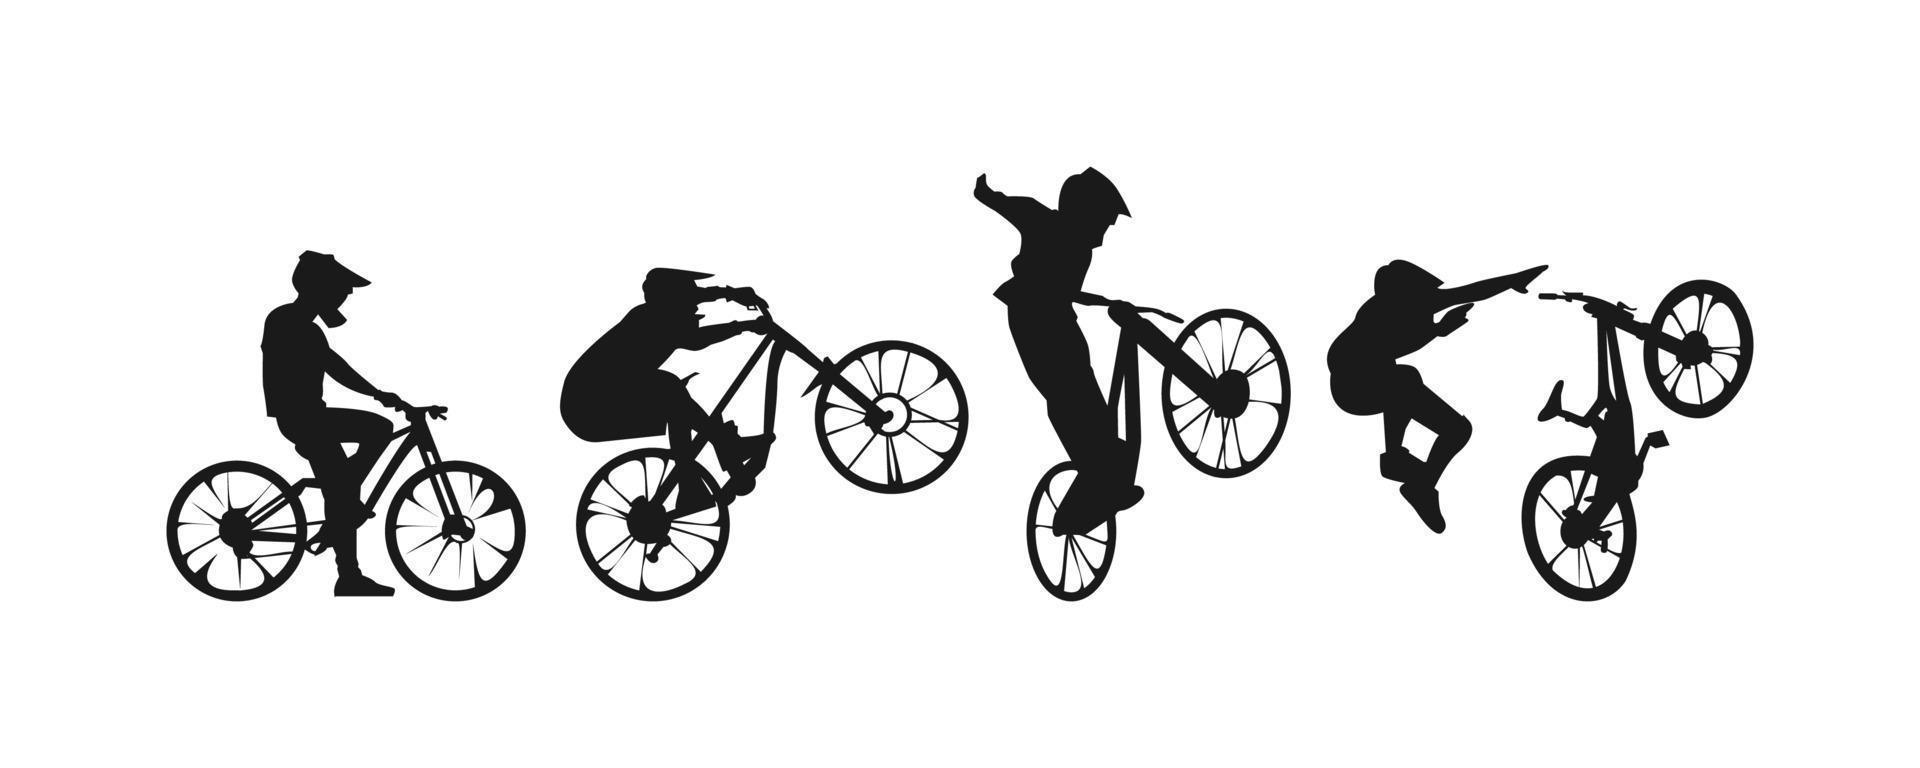 conjunto do silhuetas do bmx motociclista, ladeira abaixo, ciclistas com diferente posição, gesto, pose. dirigiu, saltou, estilo livre, caiu. extremo esporte, bicicleta, veículo conceito. vetor